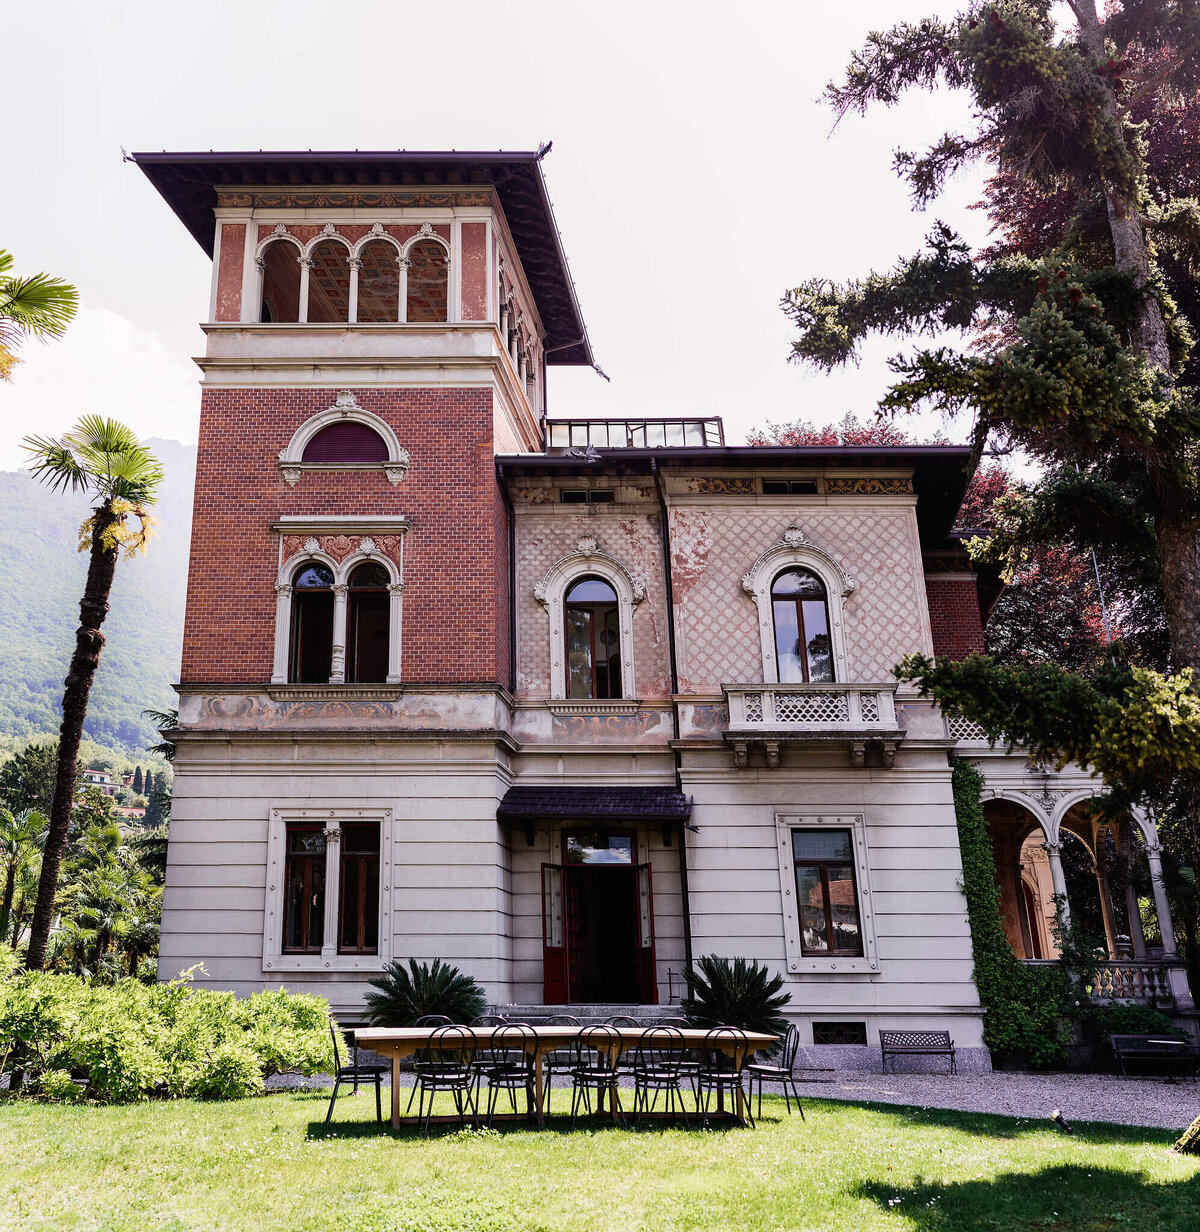 Facade of Villa Confalonieri 1913 in Lake Como, Italy